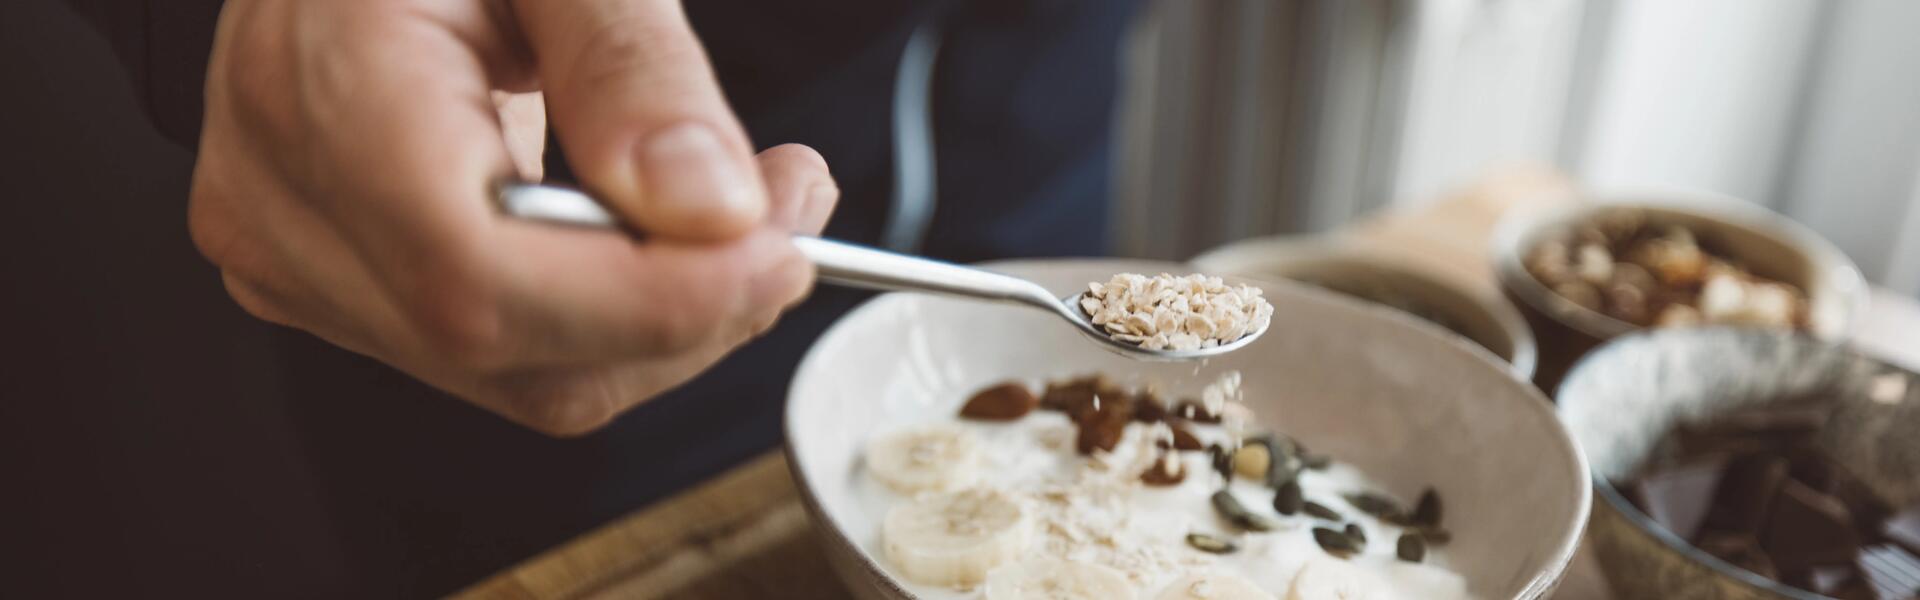 Santé : quel est le petit déjeuner idéal ?